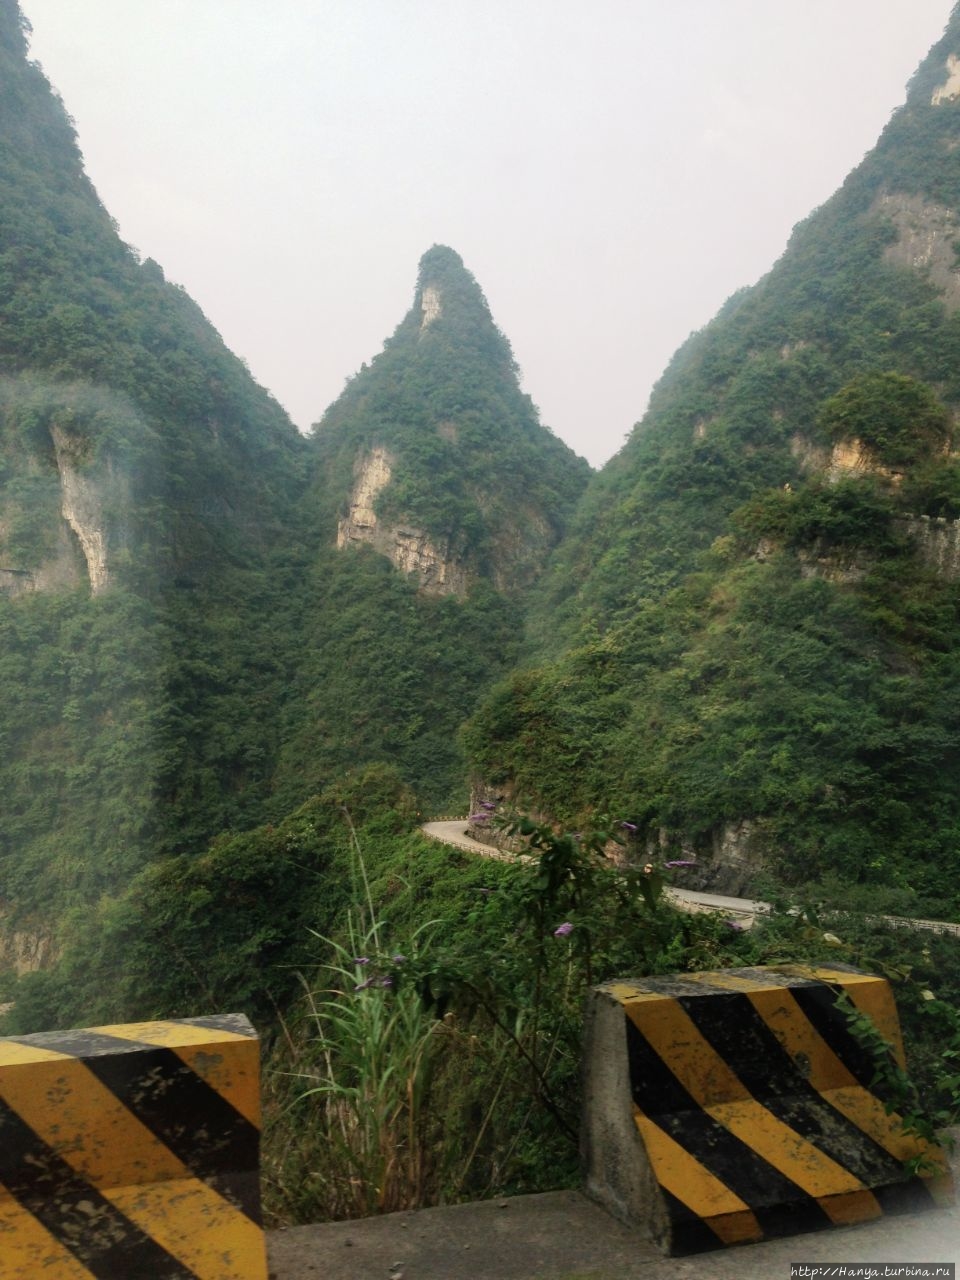 дорога Тунтянь, или Небесное шоссе Чжанцзяцзе Национальный Лесной Парк (Парк Аватар), Китай